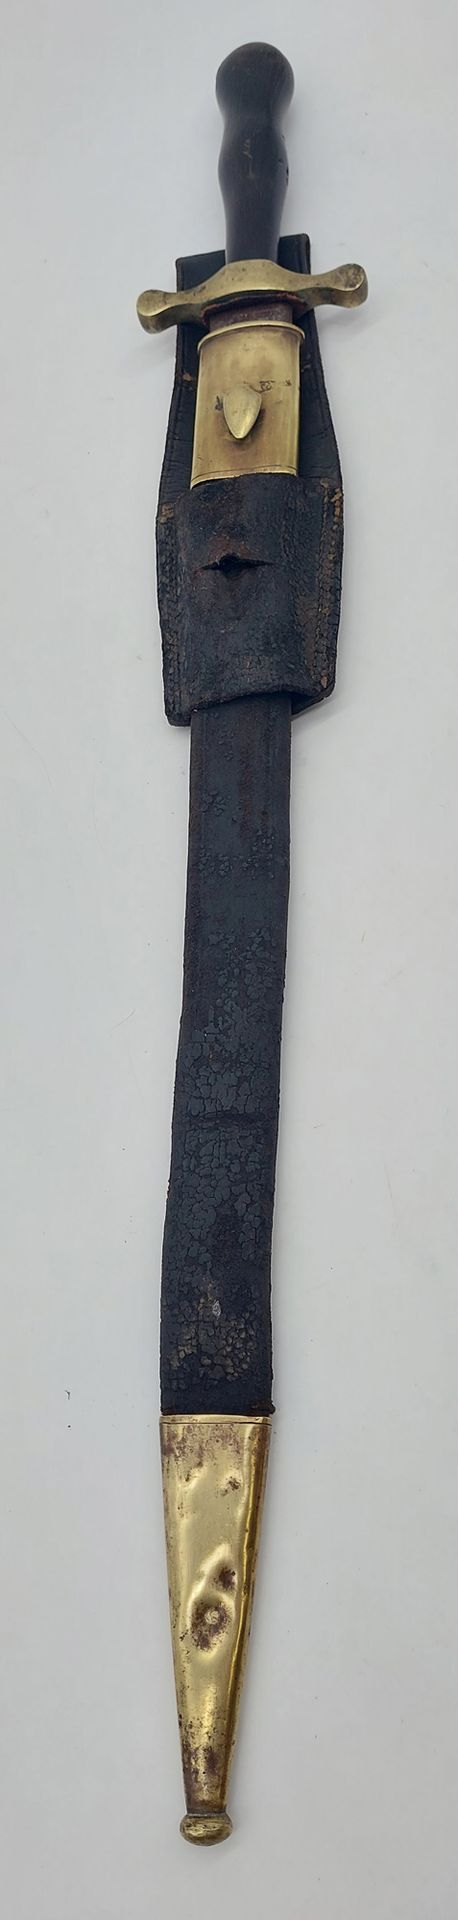 Null 猎鹰 

牛角手柄，皮革和铜质刀鞘

标记为 "东方"。

克林根塔尔制造 

(刀鞘上的事故)

总长度 : 64,5 cm